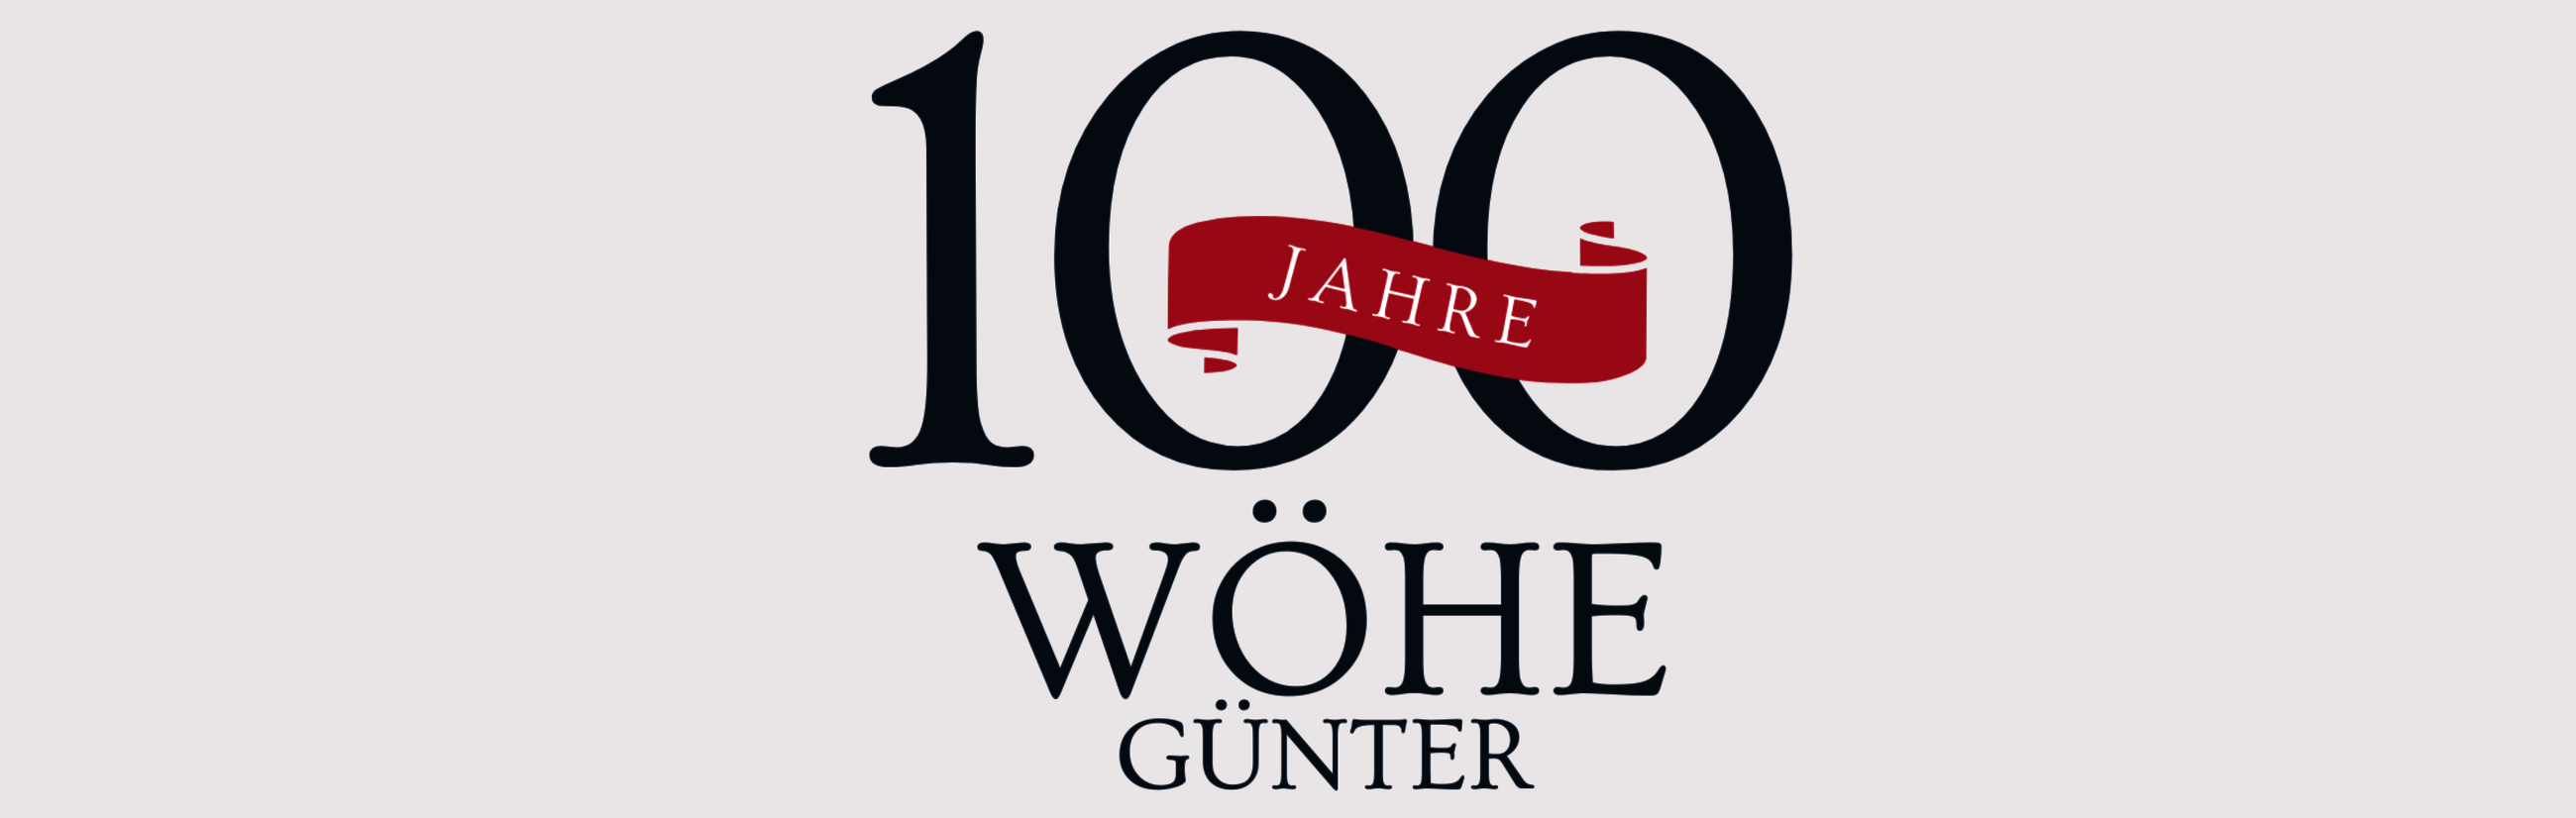 100_Jahre_Gu__nter_Wo__he